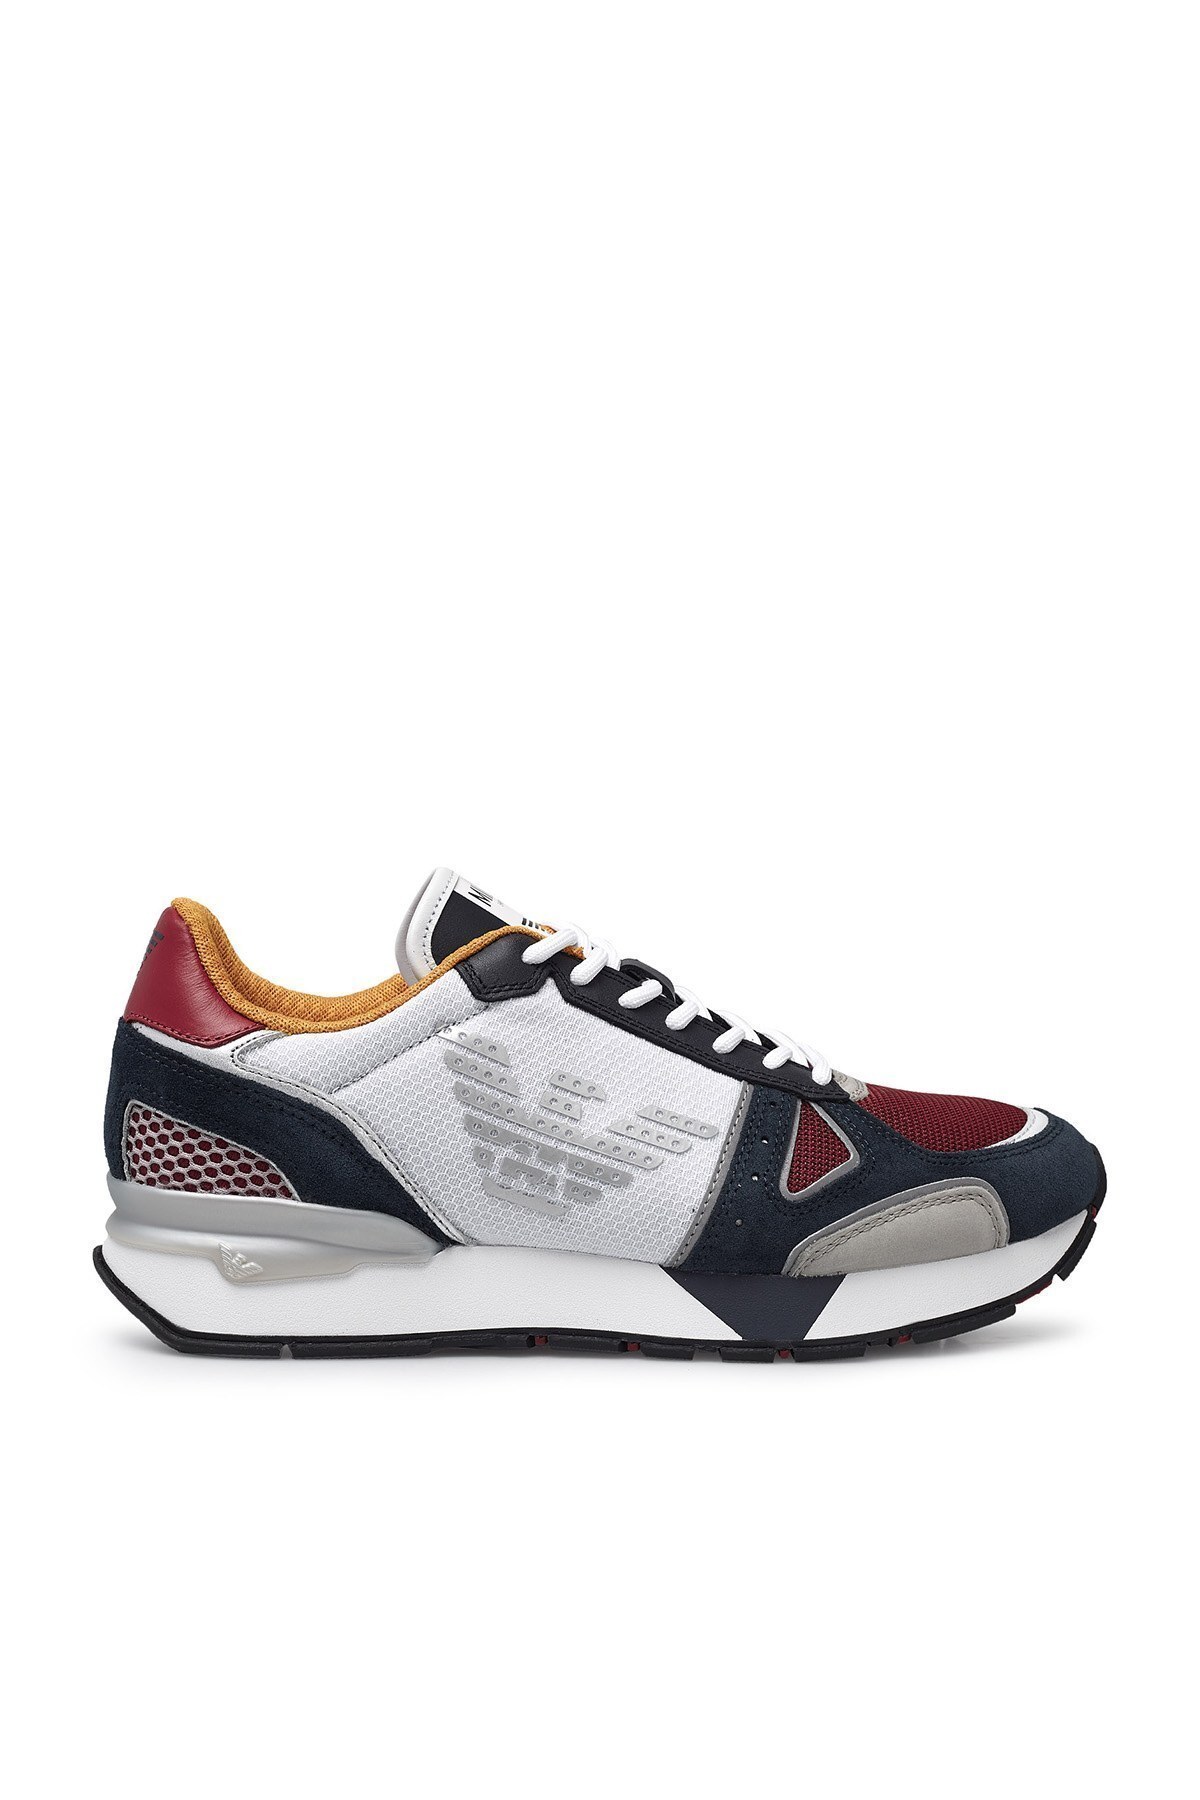 Emporio Armani Sneaker Erkek Ayakkabı X4X289 XM499 N244 BEYAZ-LACİVERT